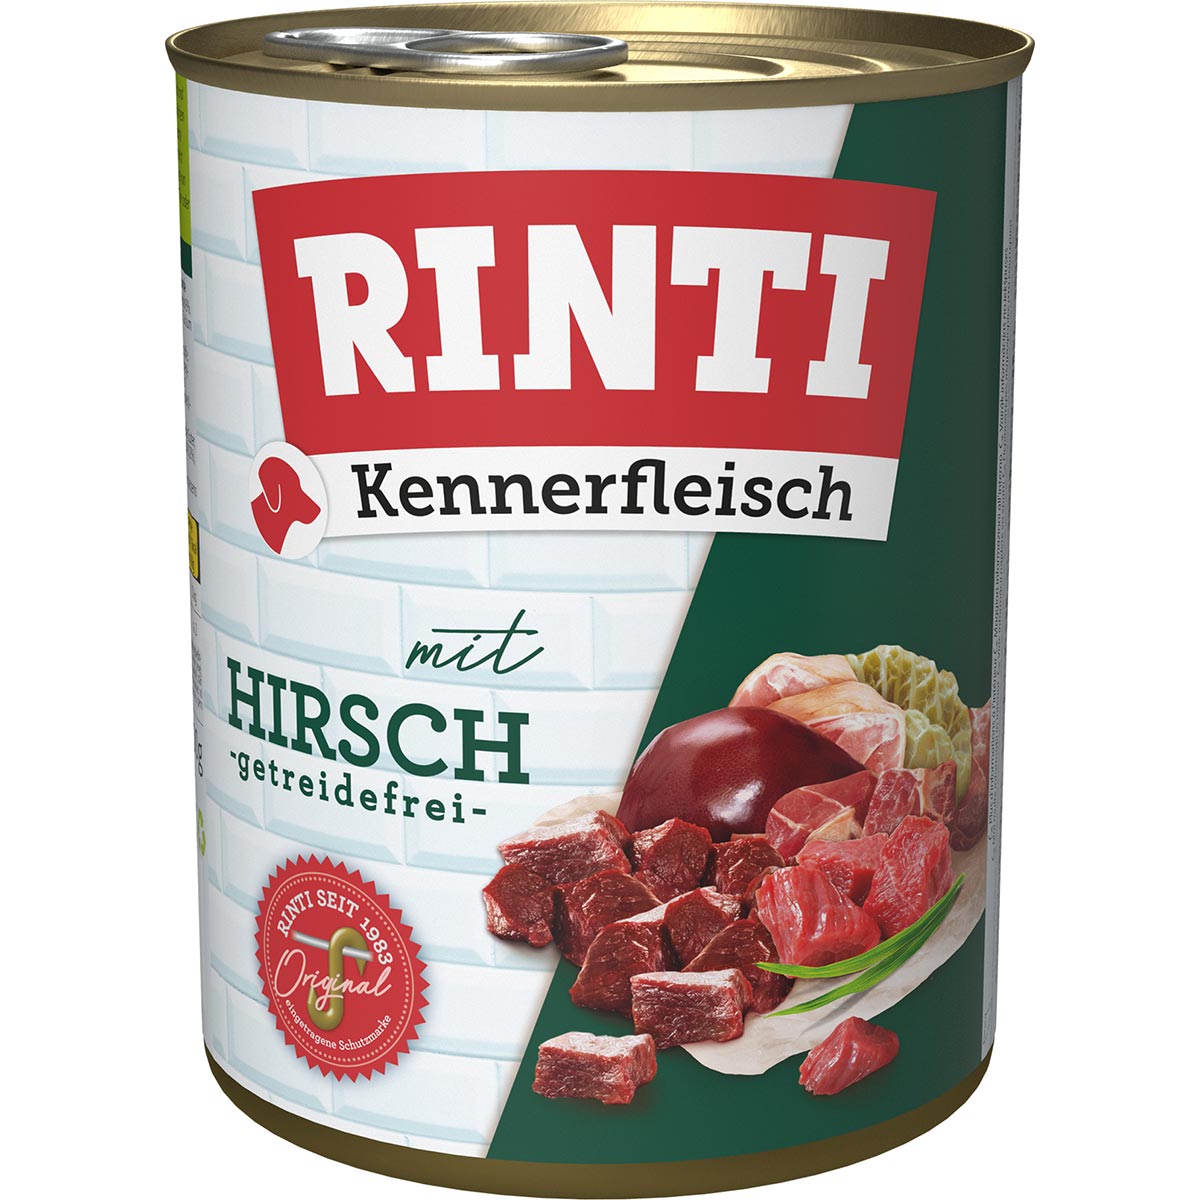 Rinti Kennerfleisch Hirsch 24x800g von Rinti